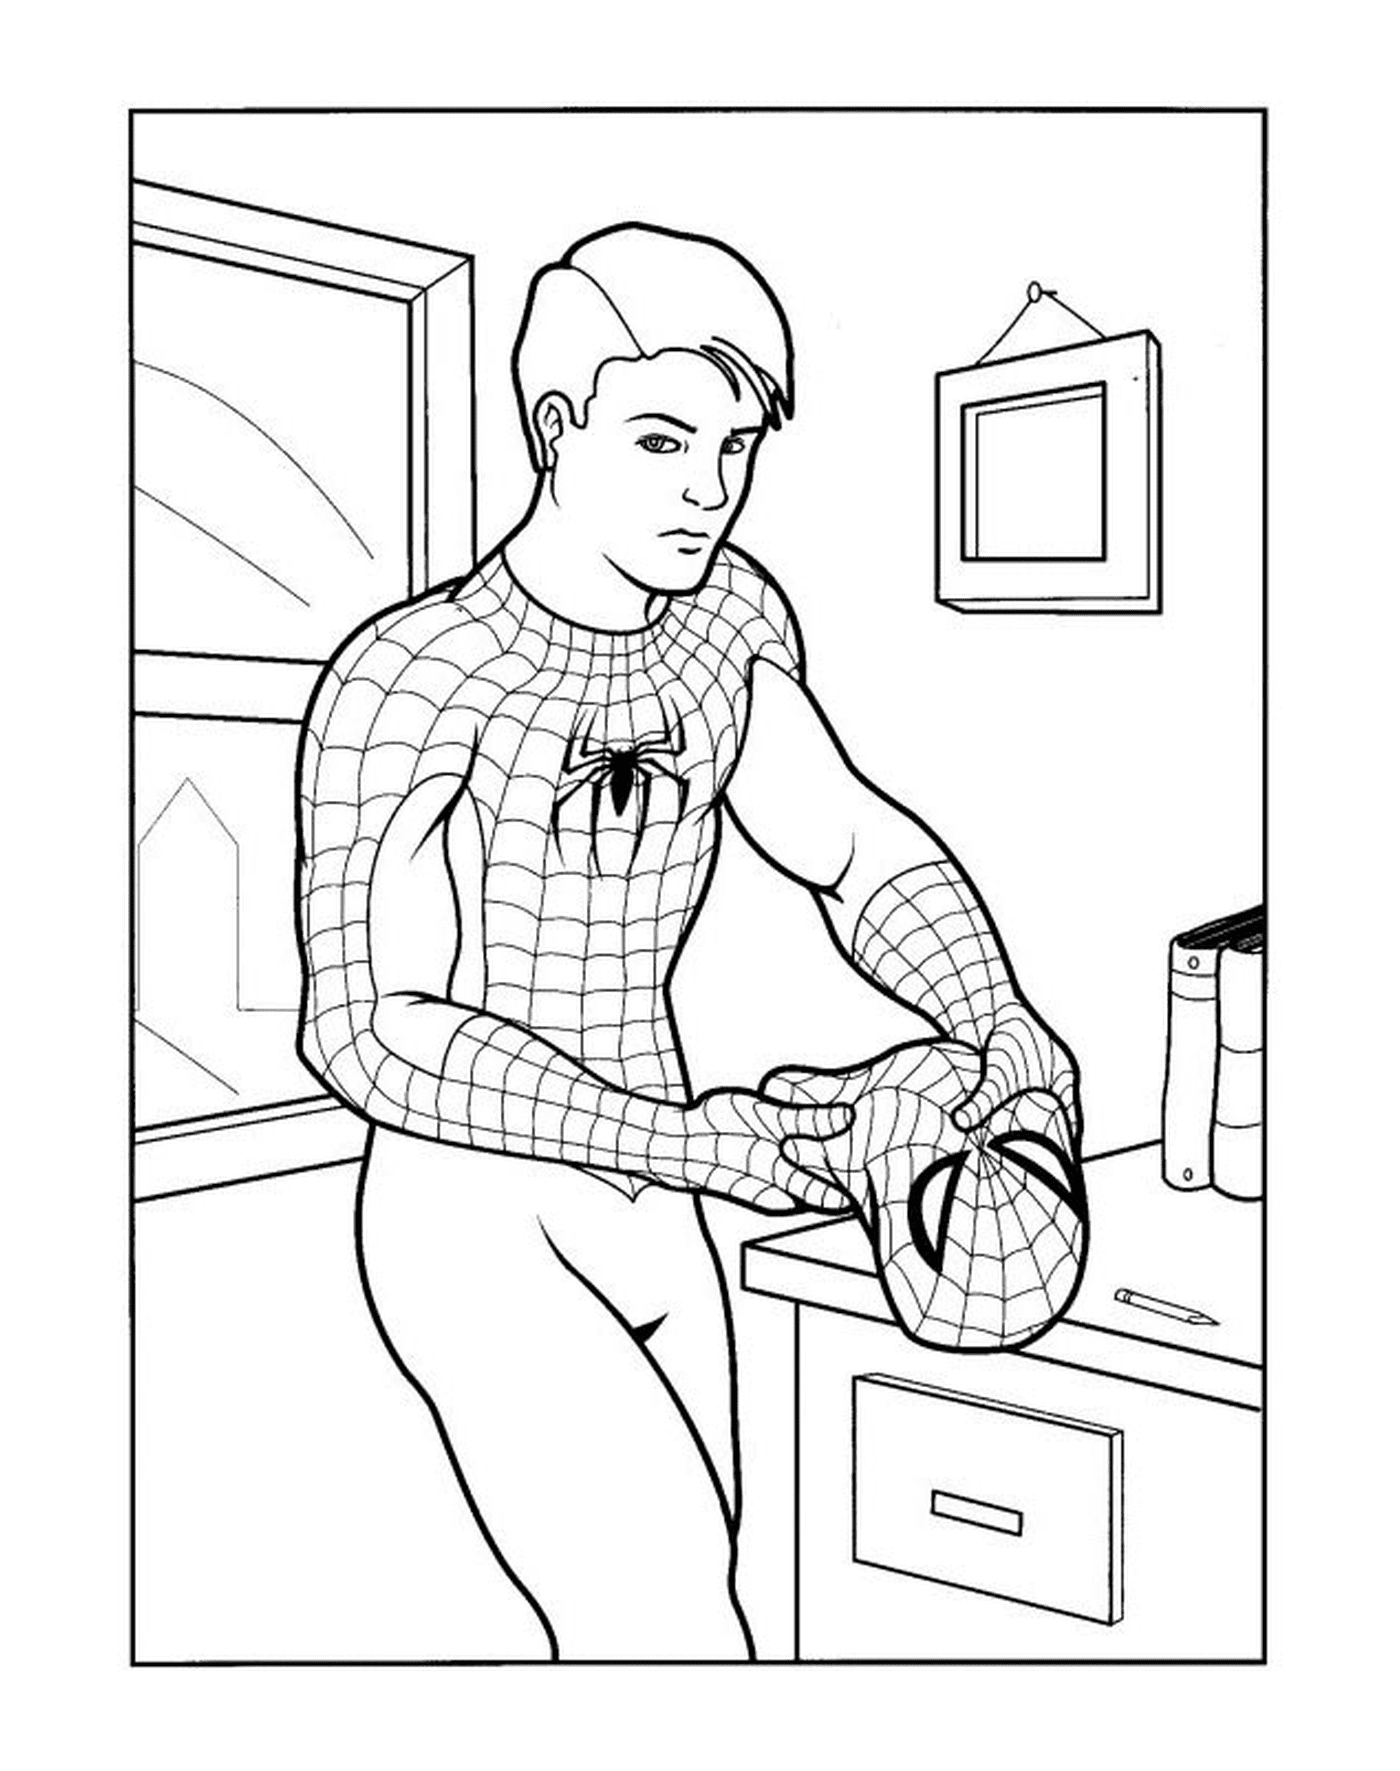   Peter Parker se transforme en Spiderman 